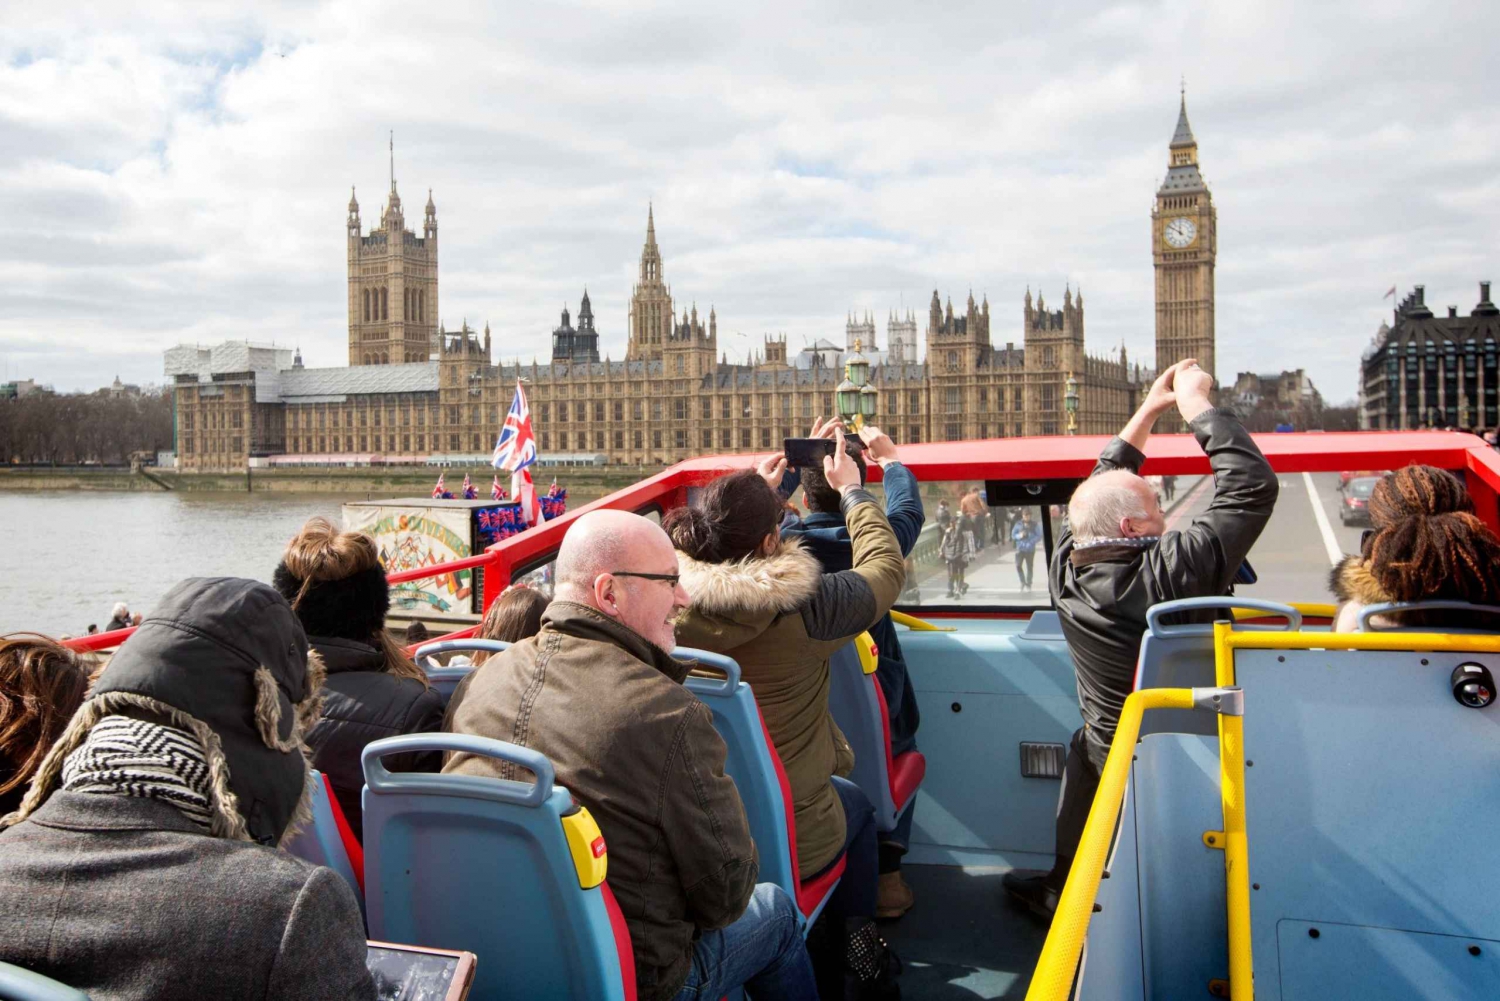 London: Harry Potter-fototur og Hop-on Hop-off-bussrundtur